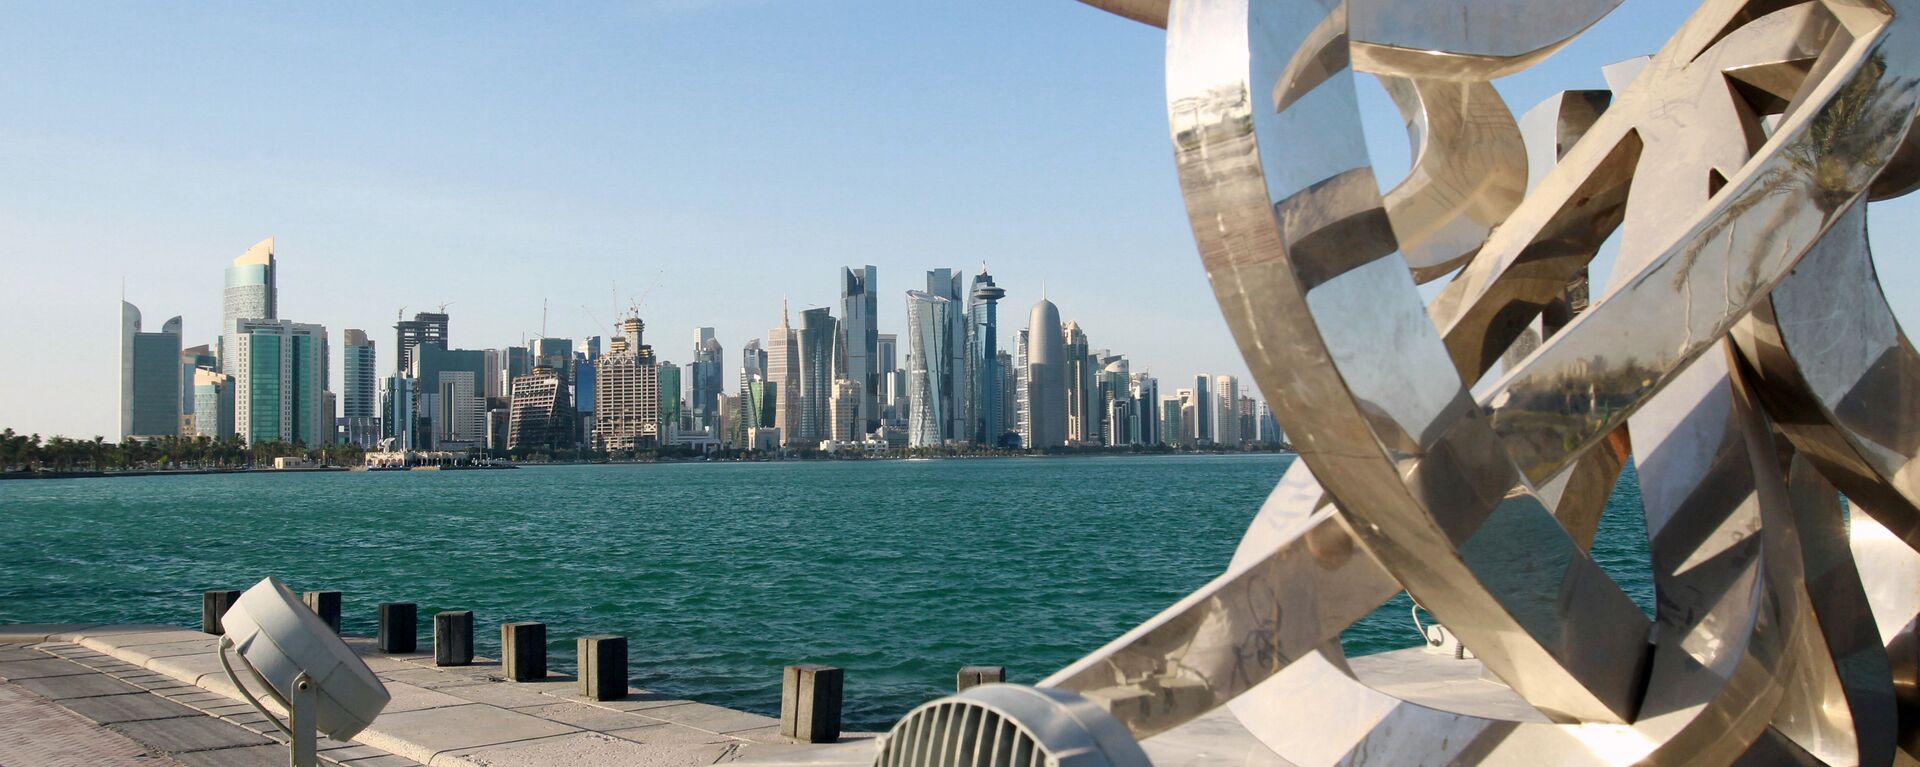 مناظر عامة للمدن العربية - الدوحة، قطر 5 يونيو 2017 - سبوتنيك عربي, 1920, 31.07.2021